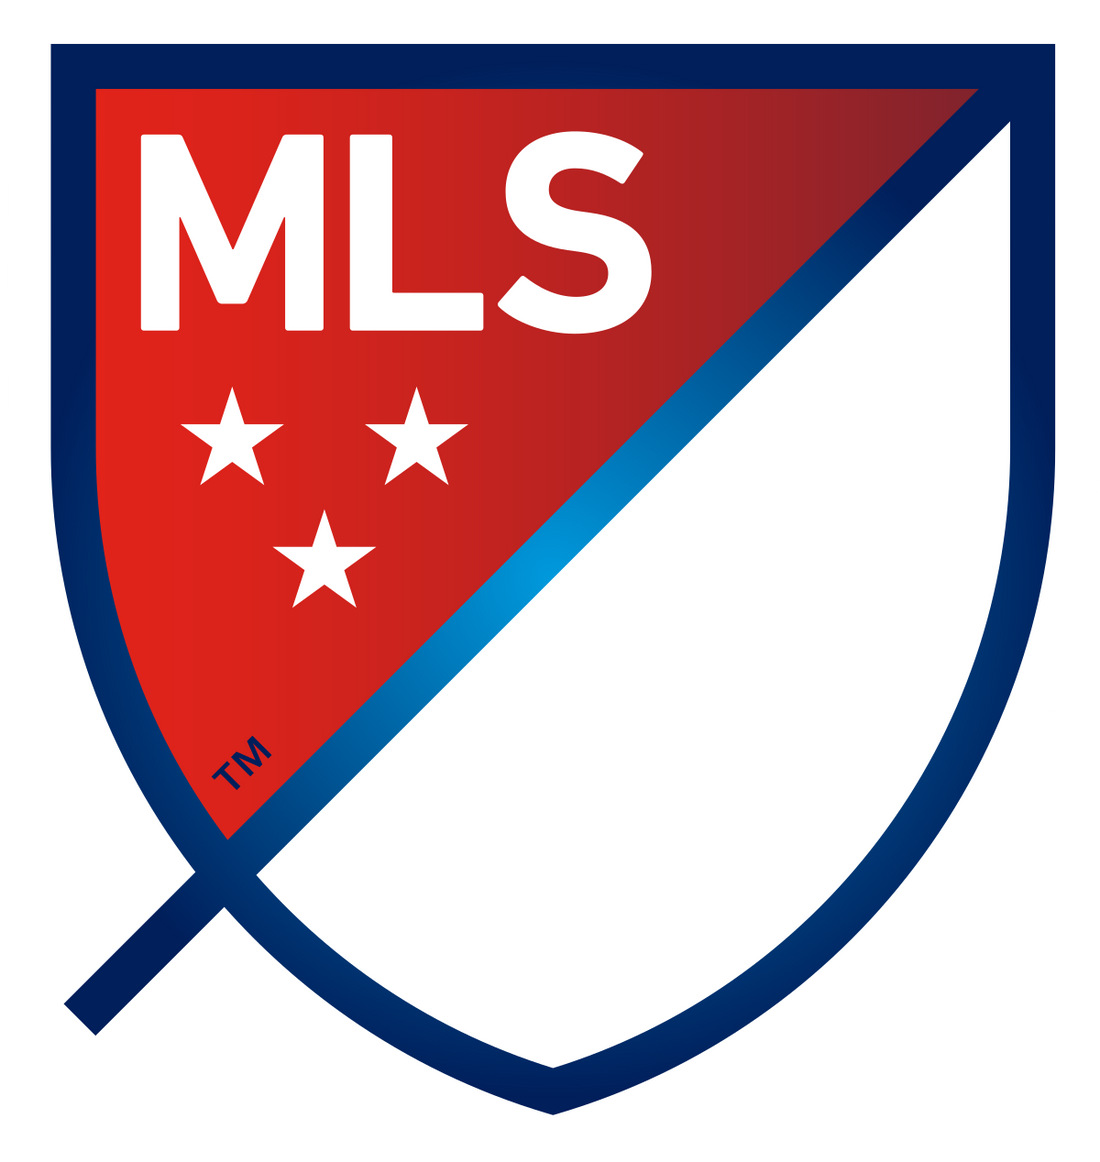 MLS - Fanaccs.com